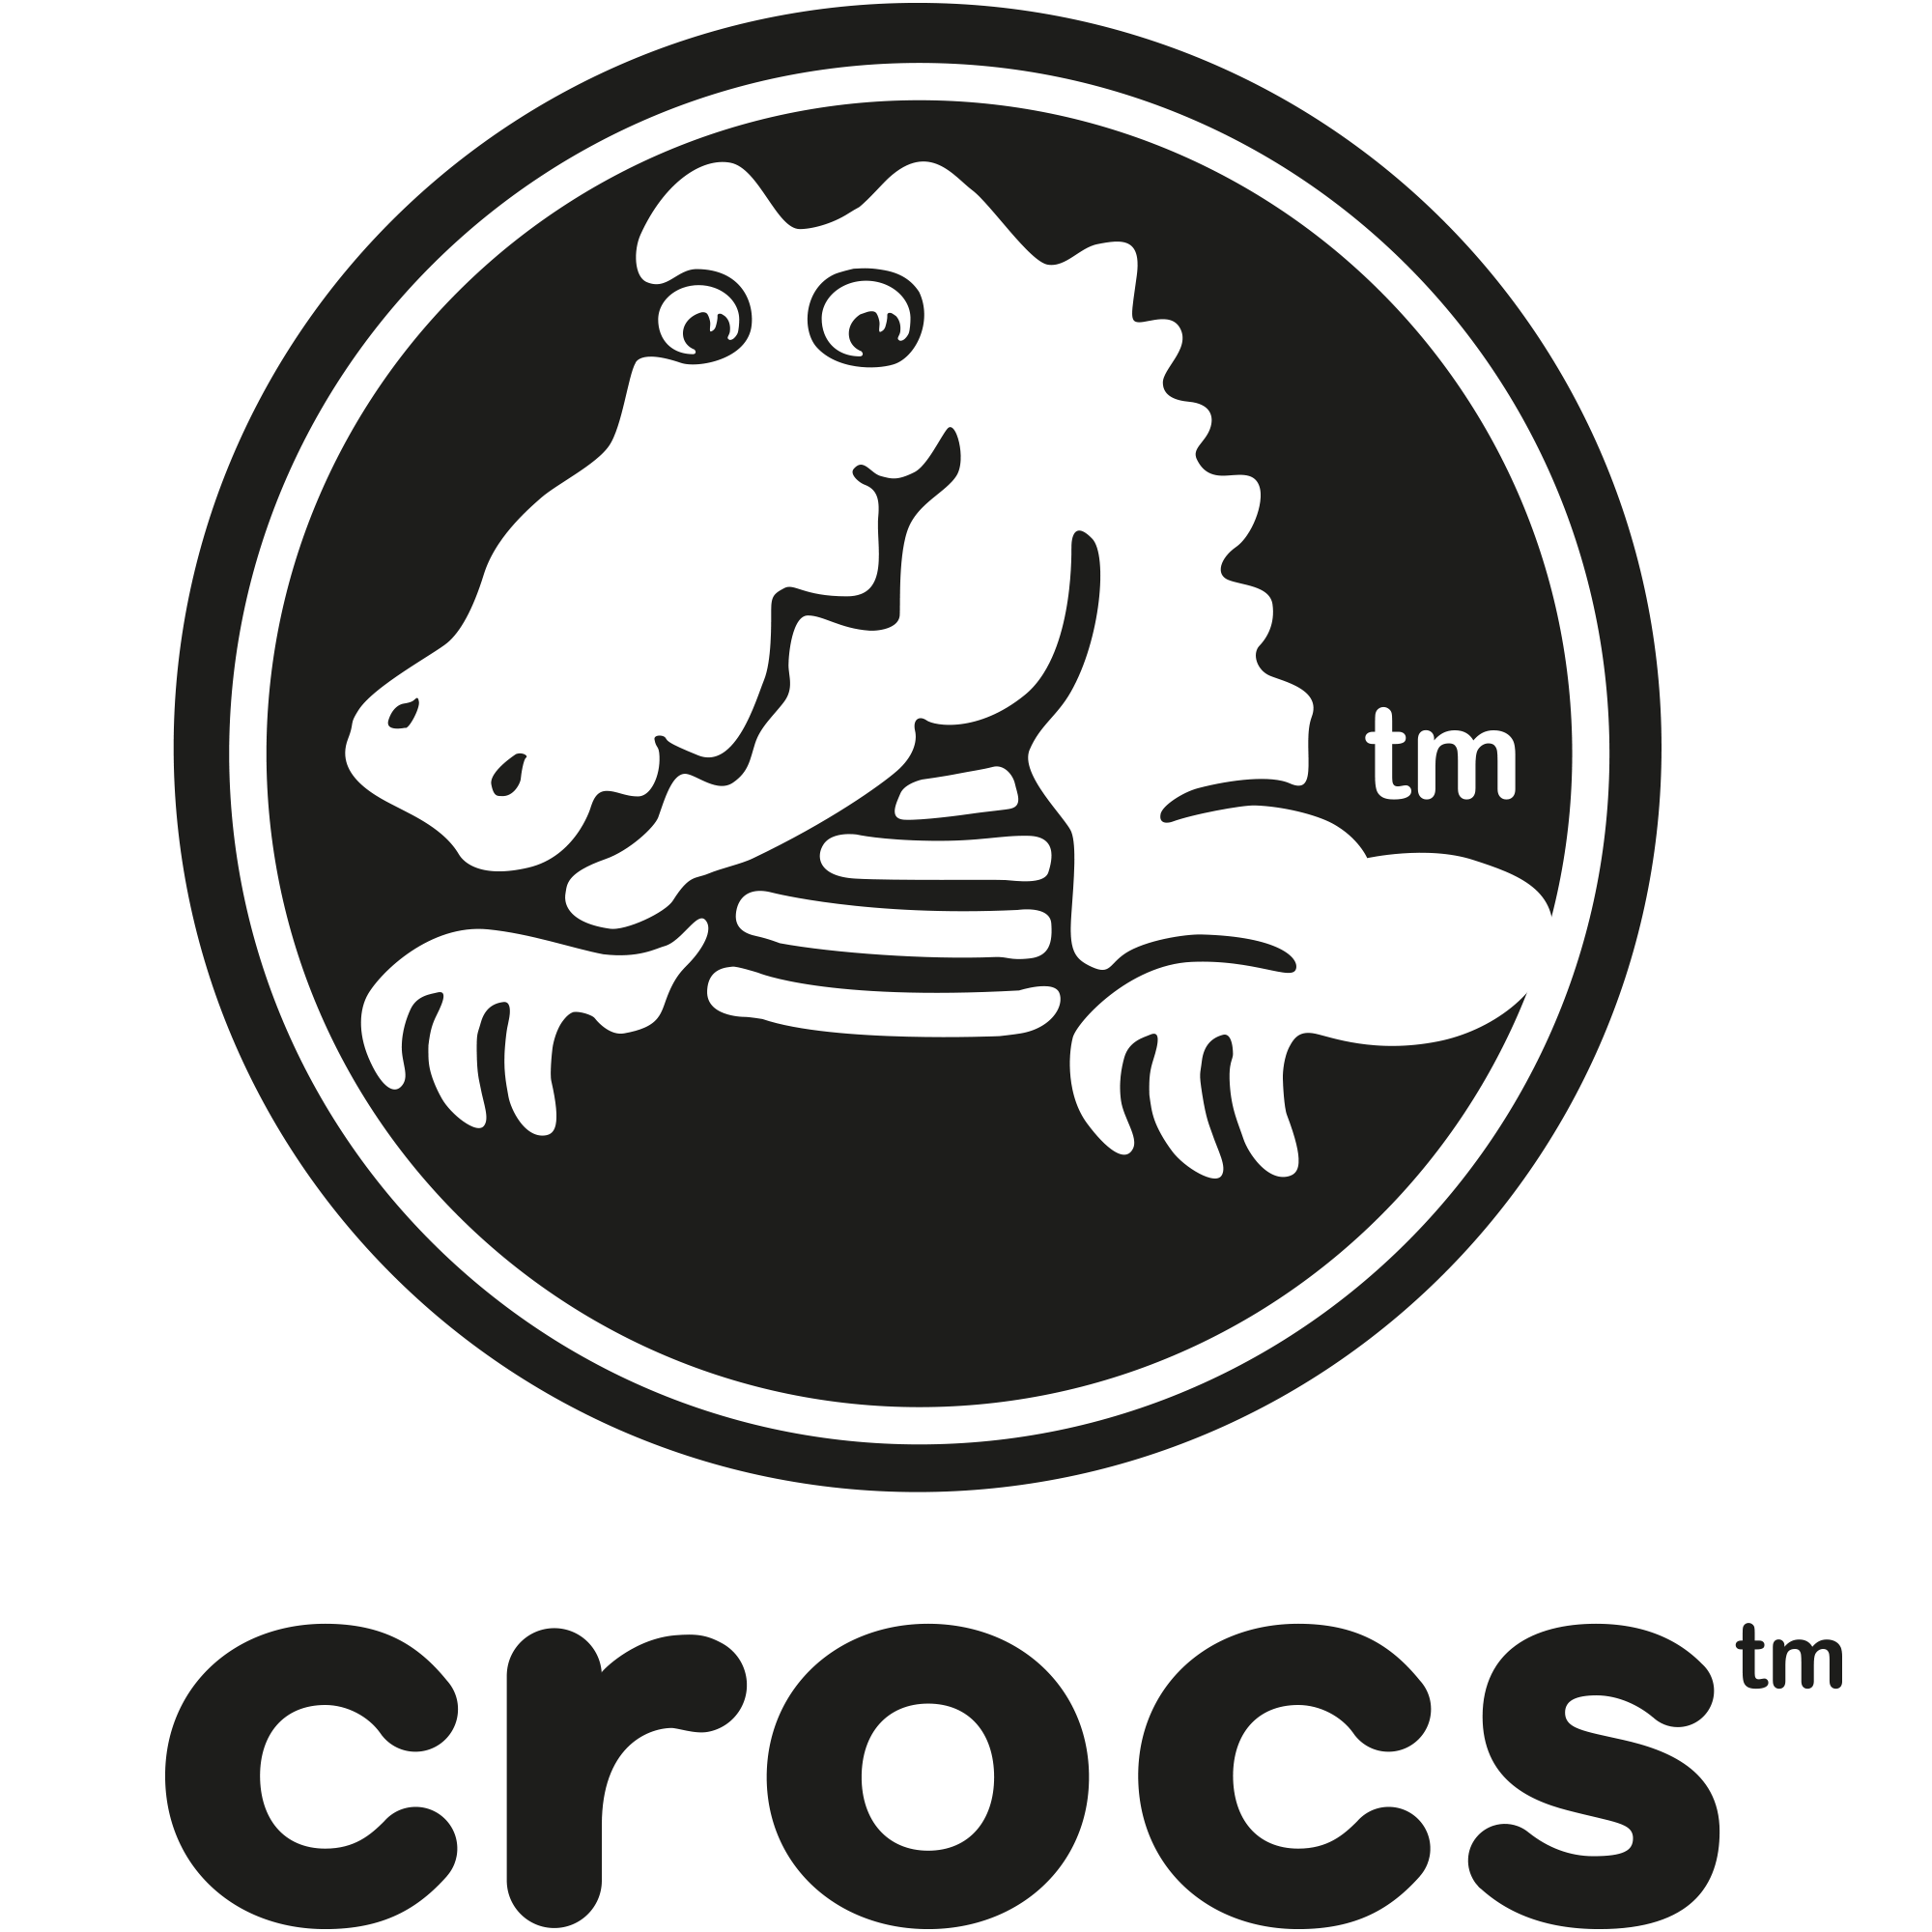 Weitere Artikel von Crocs